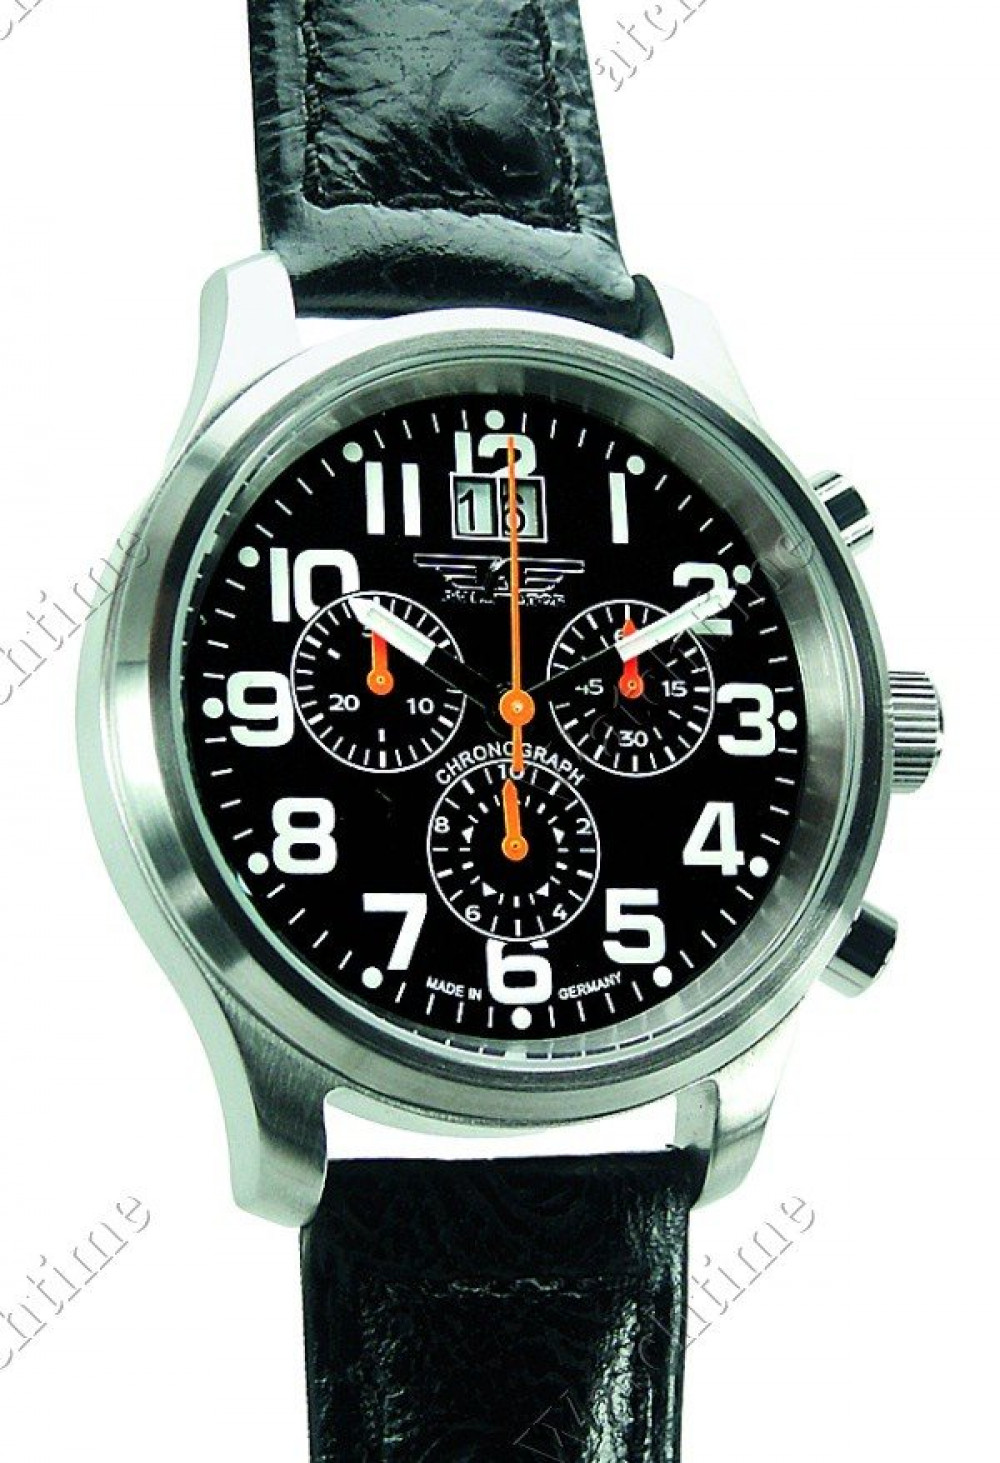 Zegarek firmy Aviator (Germany), model Sportlicher Chronograph